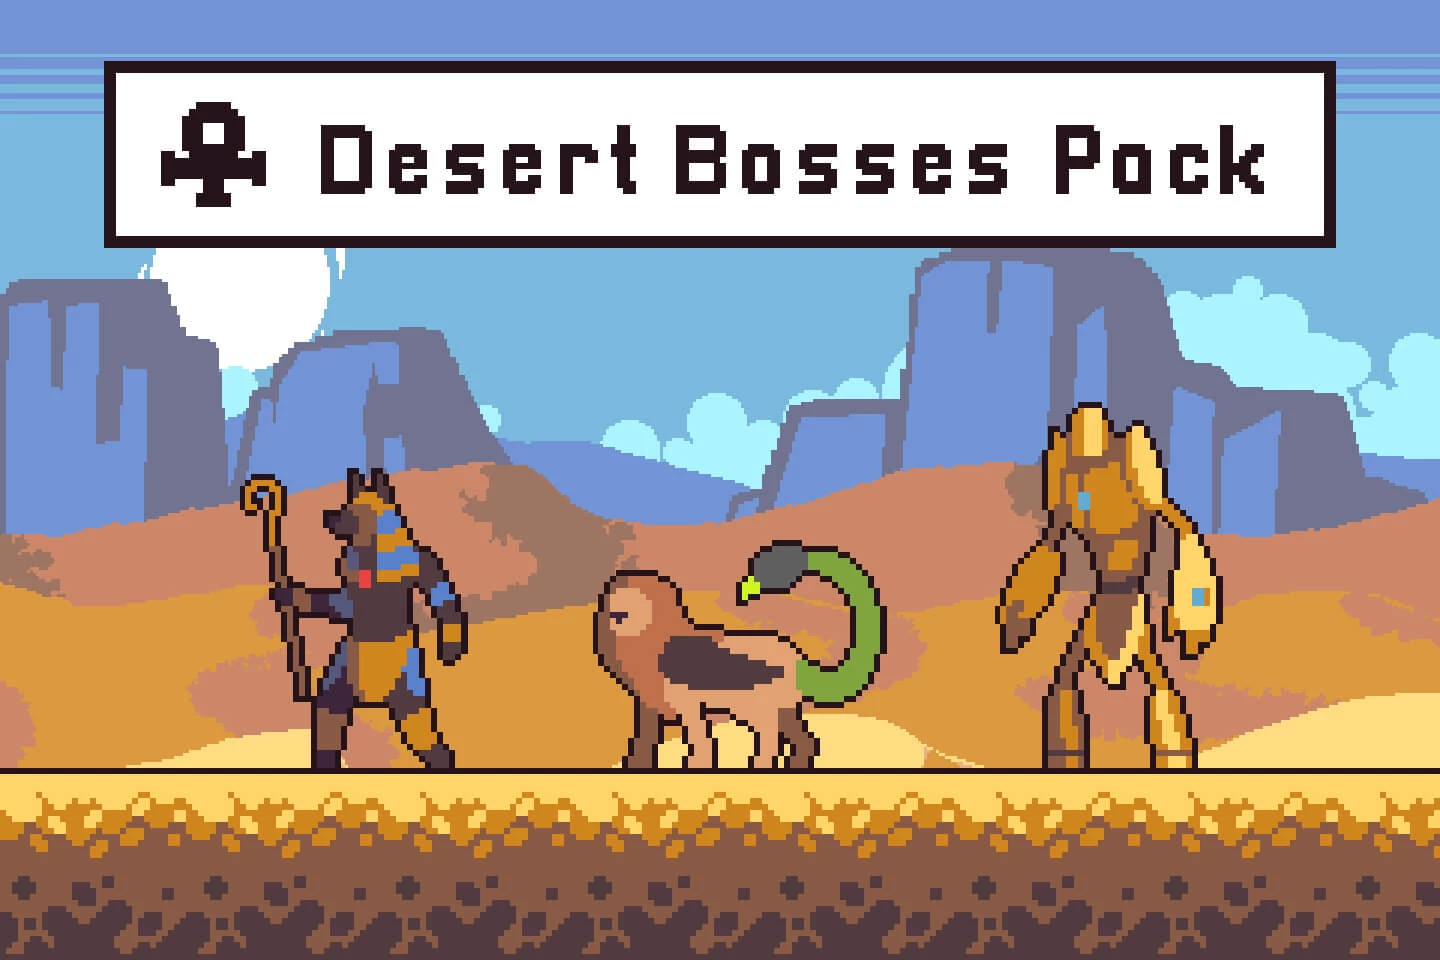 Desert Bosses Pixel Art Sprite Sheet Pack 